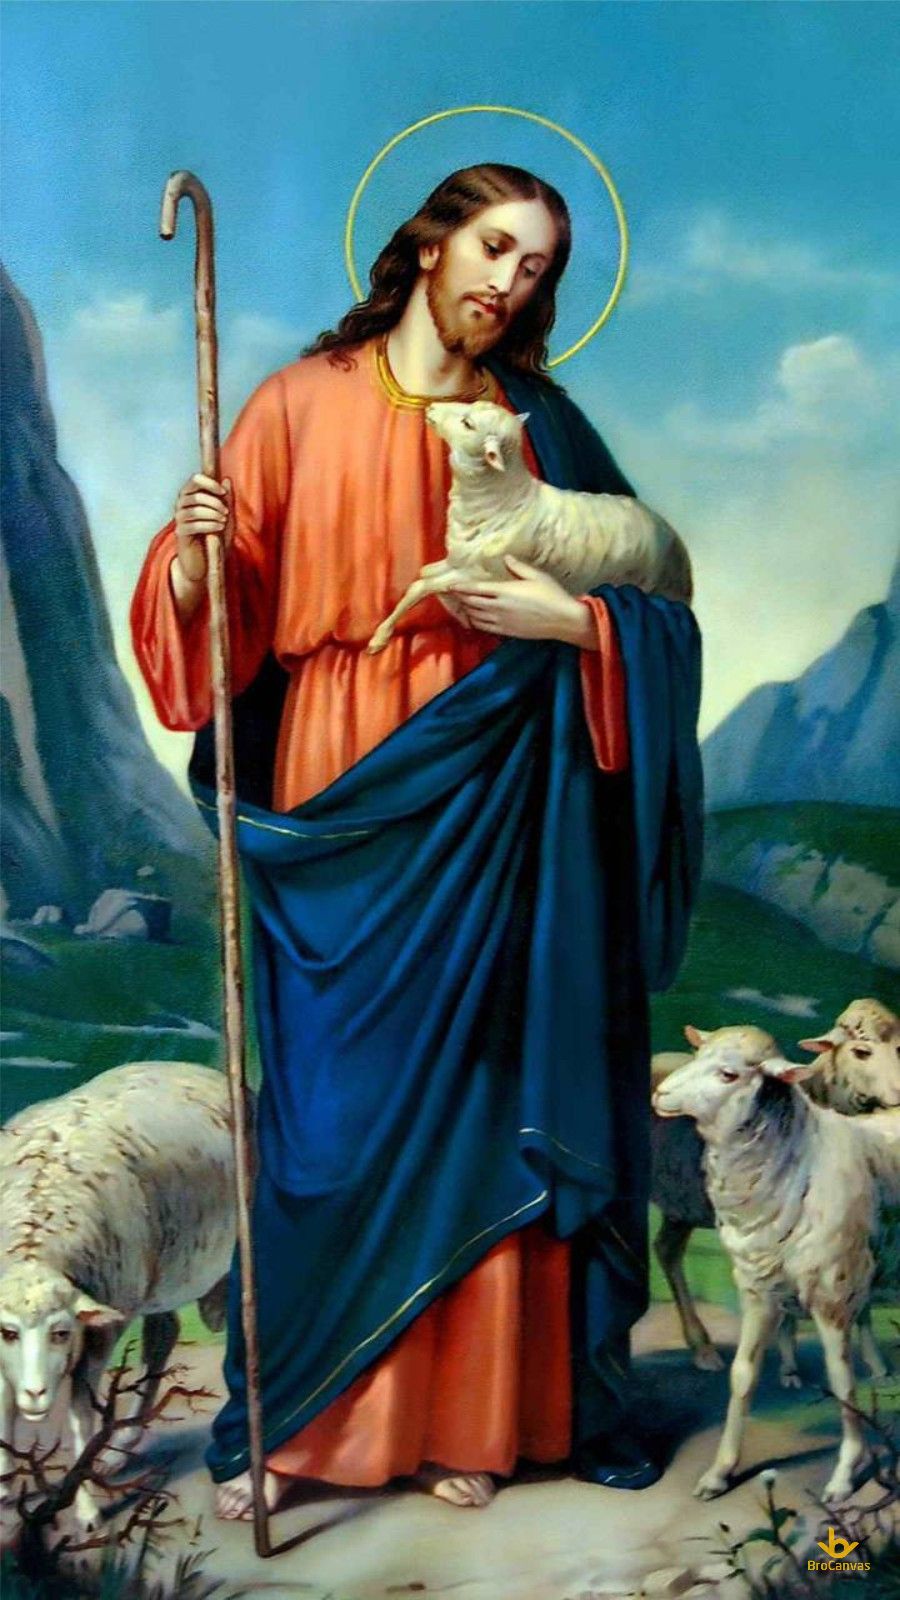 Chúa giêsu chăn cừu dưới chân núi